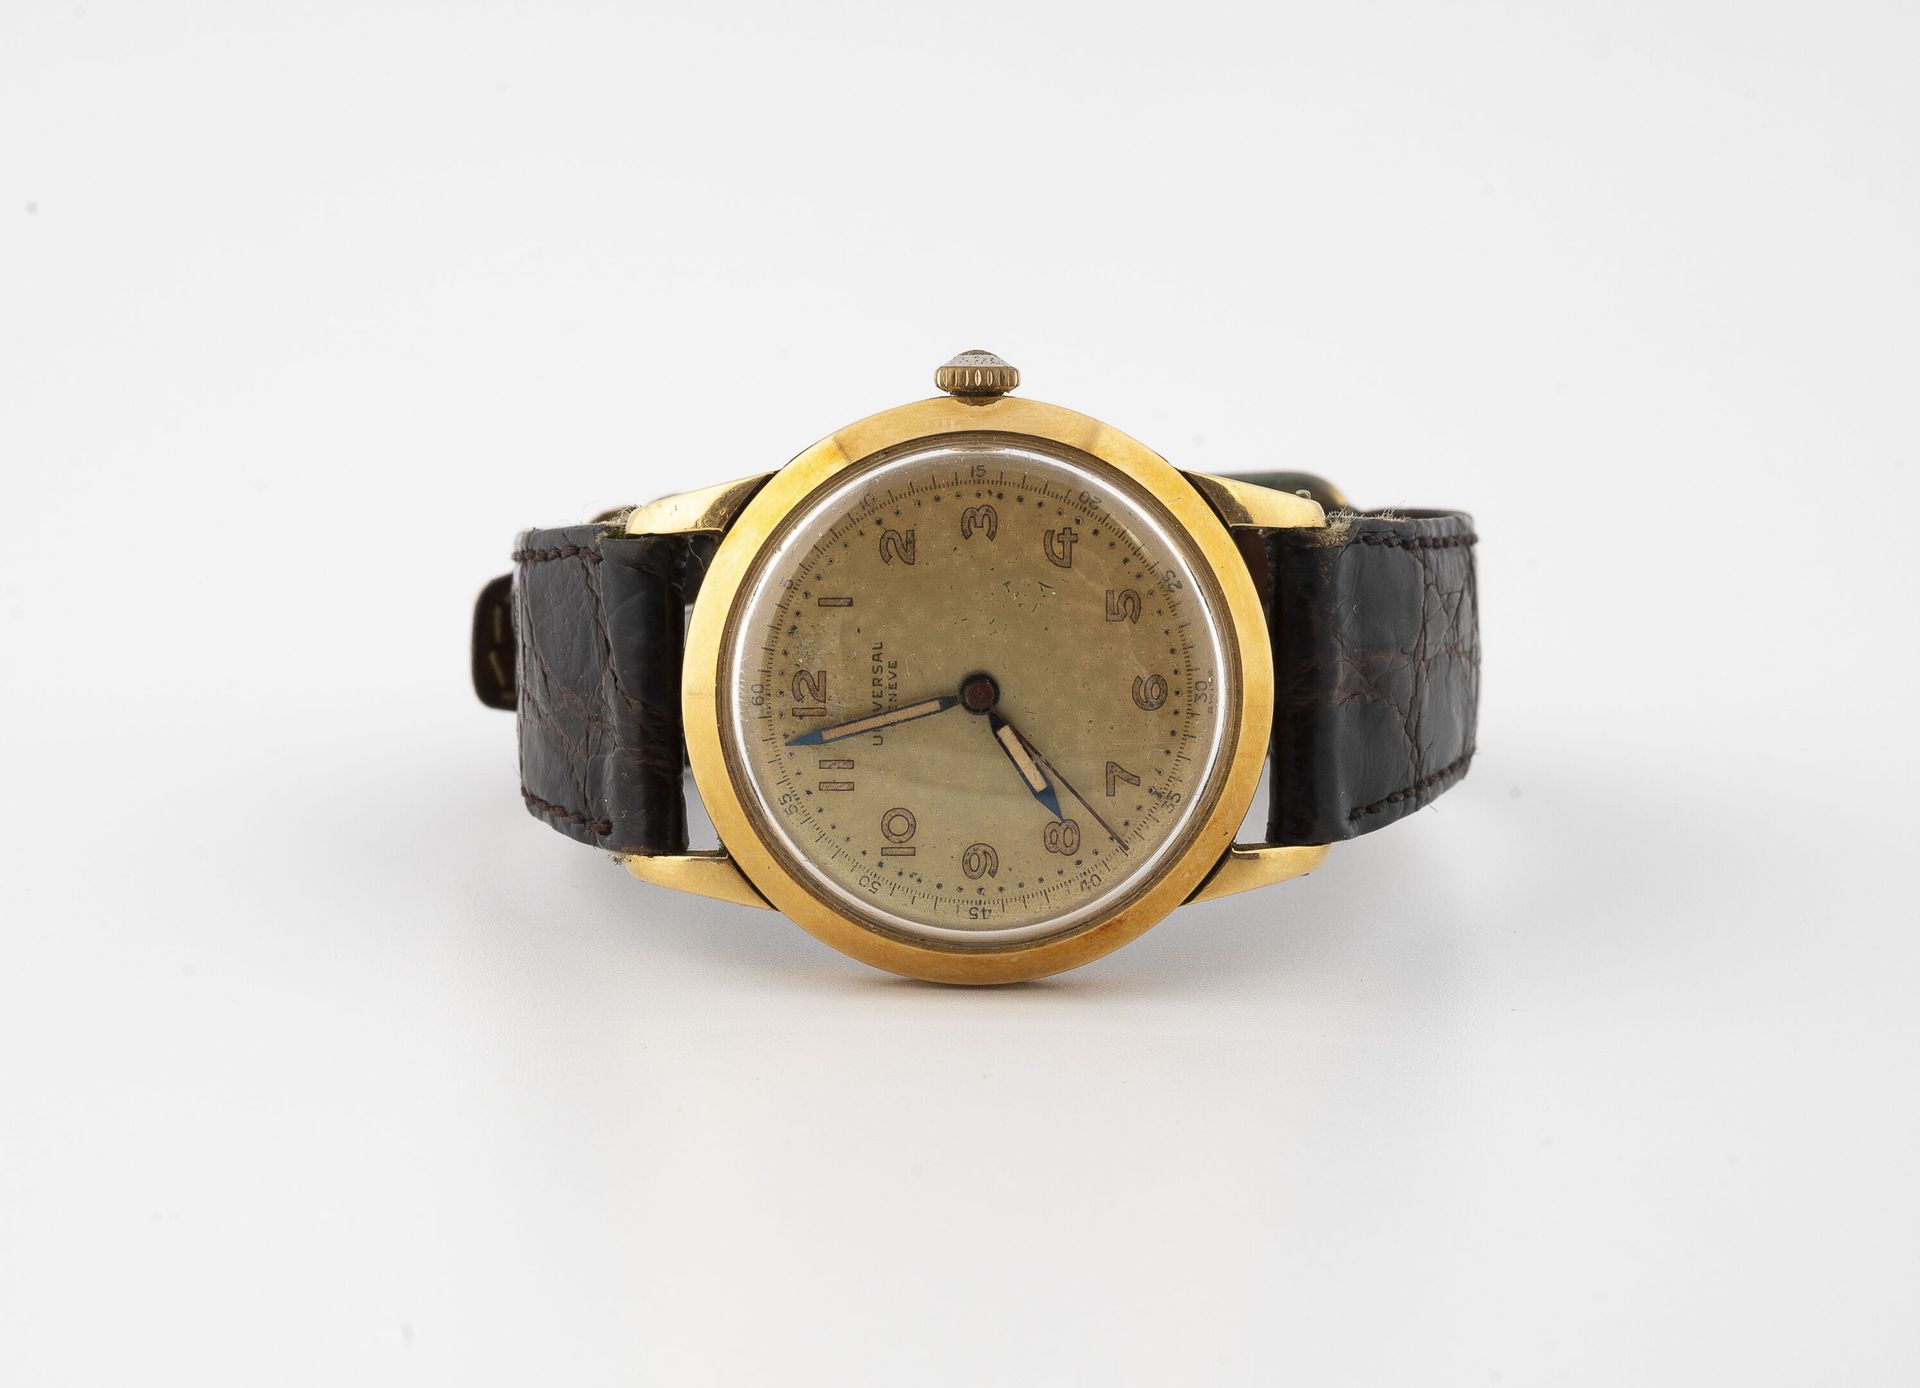 UNIVERSAL GENEVE 男士腕表。

黄金（750）圆形表壳。

金色背景的表盘，签名，金色的阿拉伯数字代表小时，黑色的轨道和阿拉伯数字代表分钟。

&hellip;